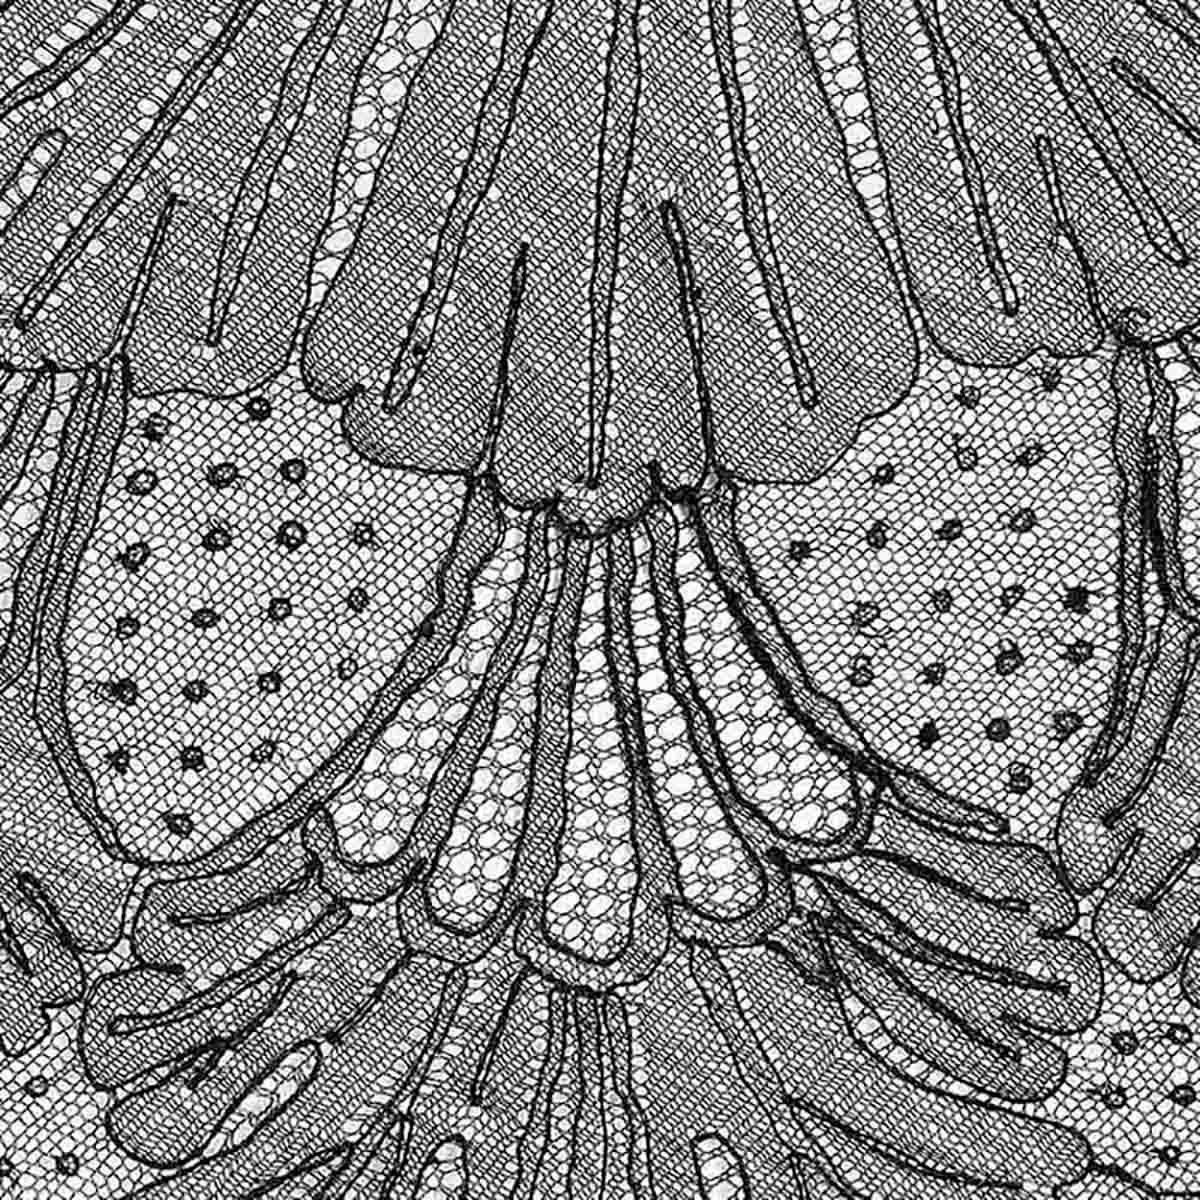 Détails du produit : Robe de thé vintage des années 1920 - Dentelle florale noire - Encolure en V devant et derrière - Fente sur le côté - Manches 3/4 + passepoil en soie noire à l'ourlet
Label : Inconnu 
Contenu du tissu : Noir - Robe en dentelle